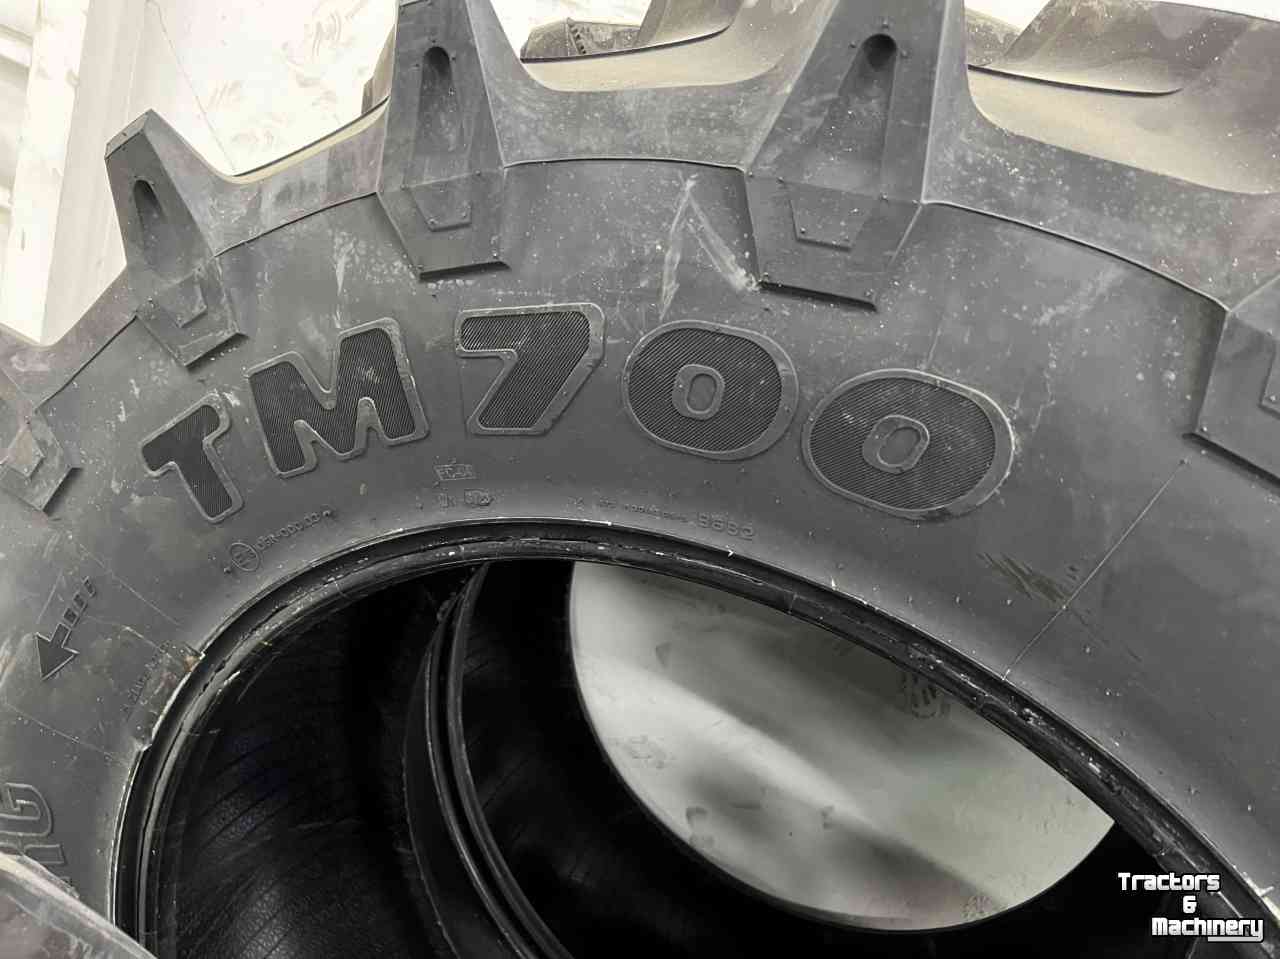 Wheels, Tyres, Rims & Dual spacers Trelleborg 480/70R34 TM 700 + 380/70R24 TM 700 (Eerste montage)